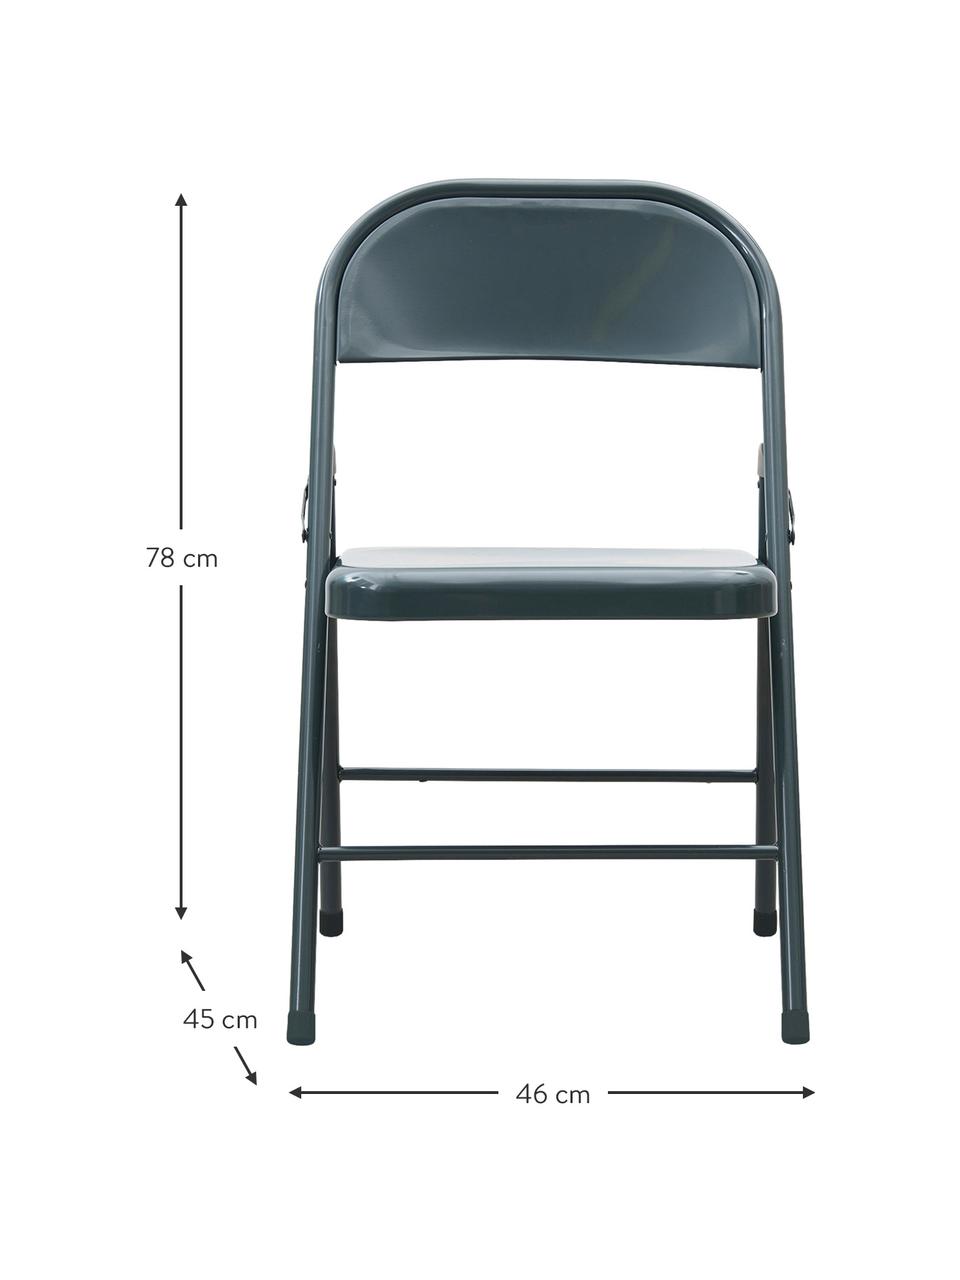 Składane krzesło ogrodowe Fold, Aluminium powlekane, Odcienie szarego, odcienie zielonego, S 46 x G 45 cm